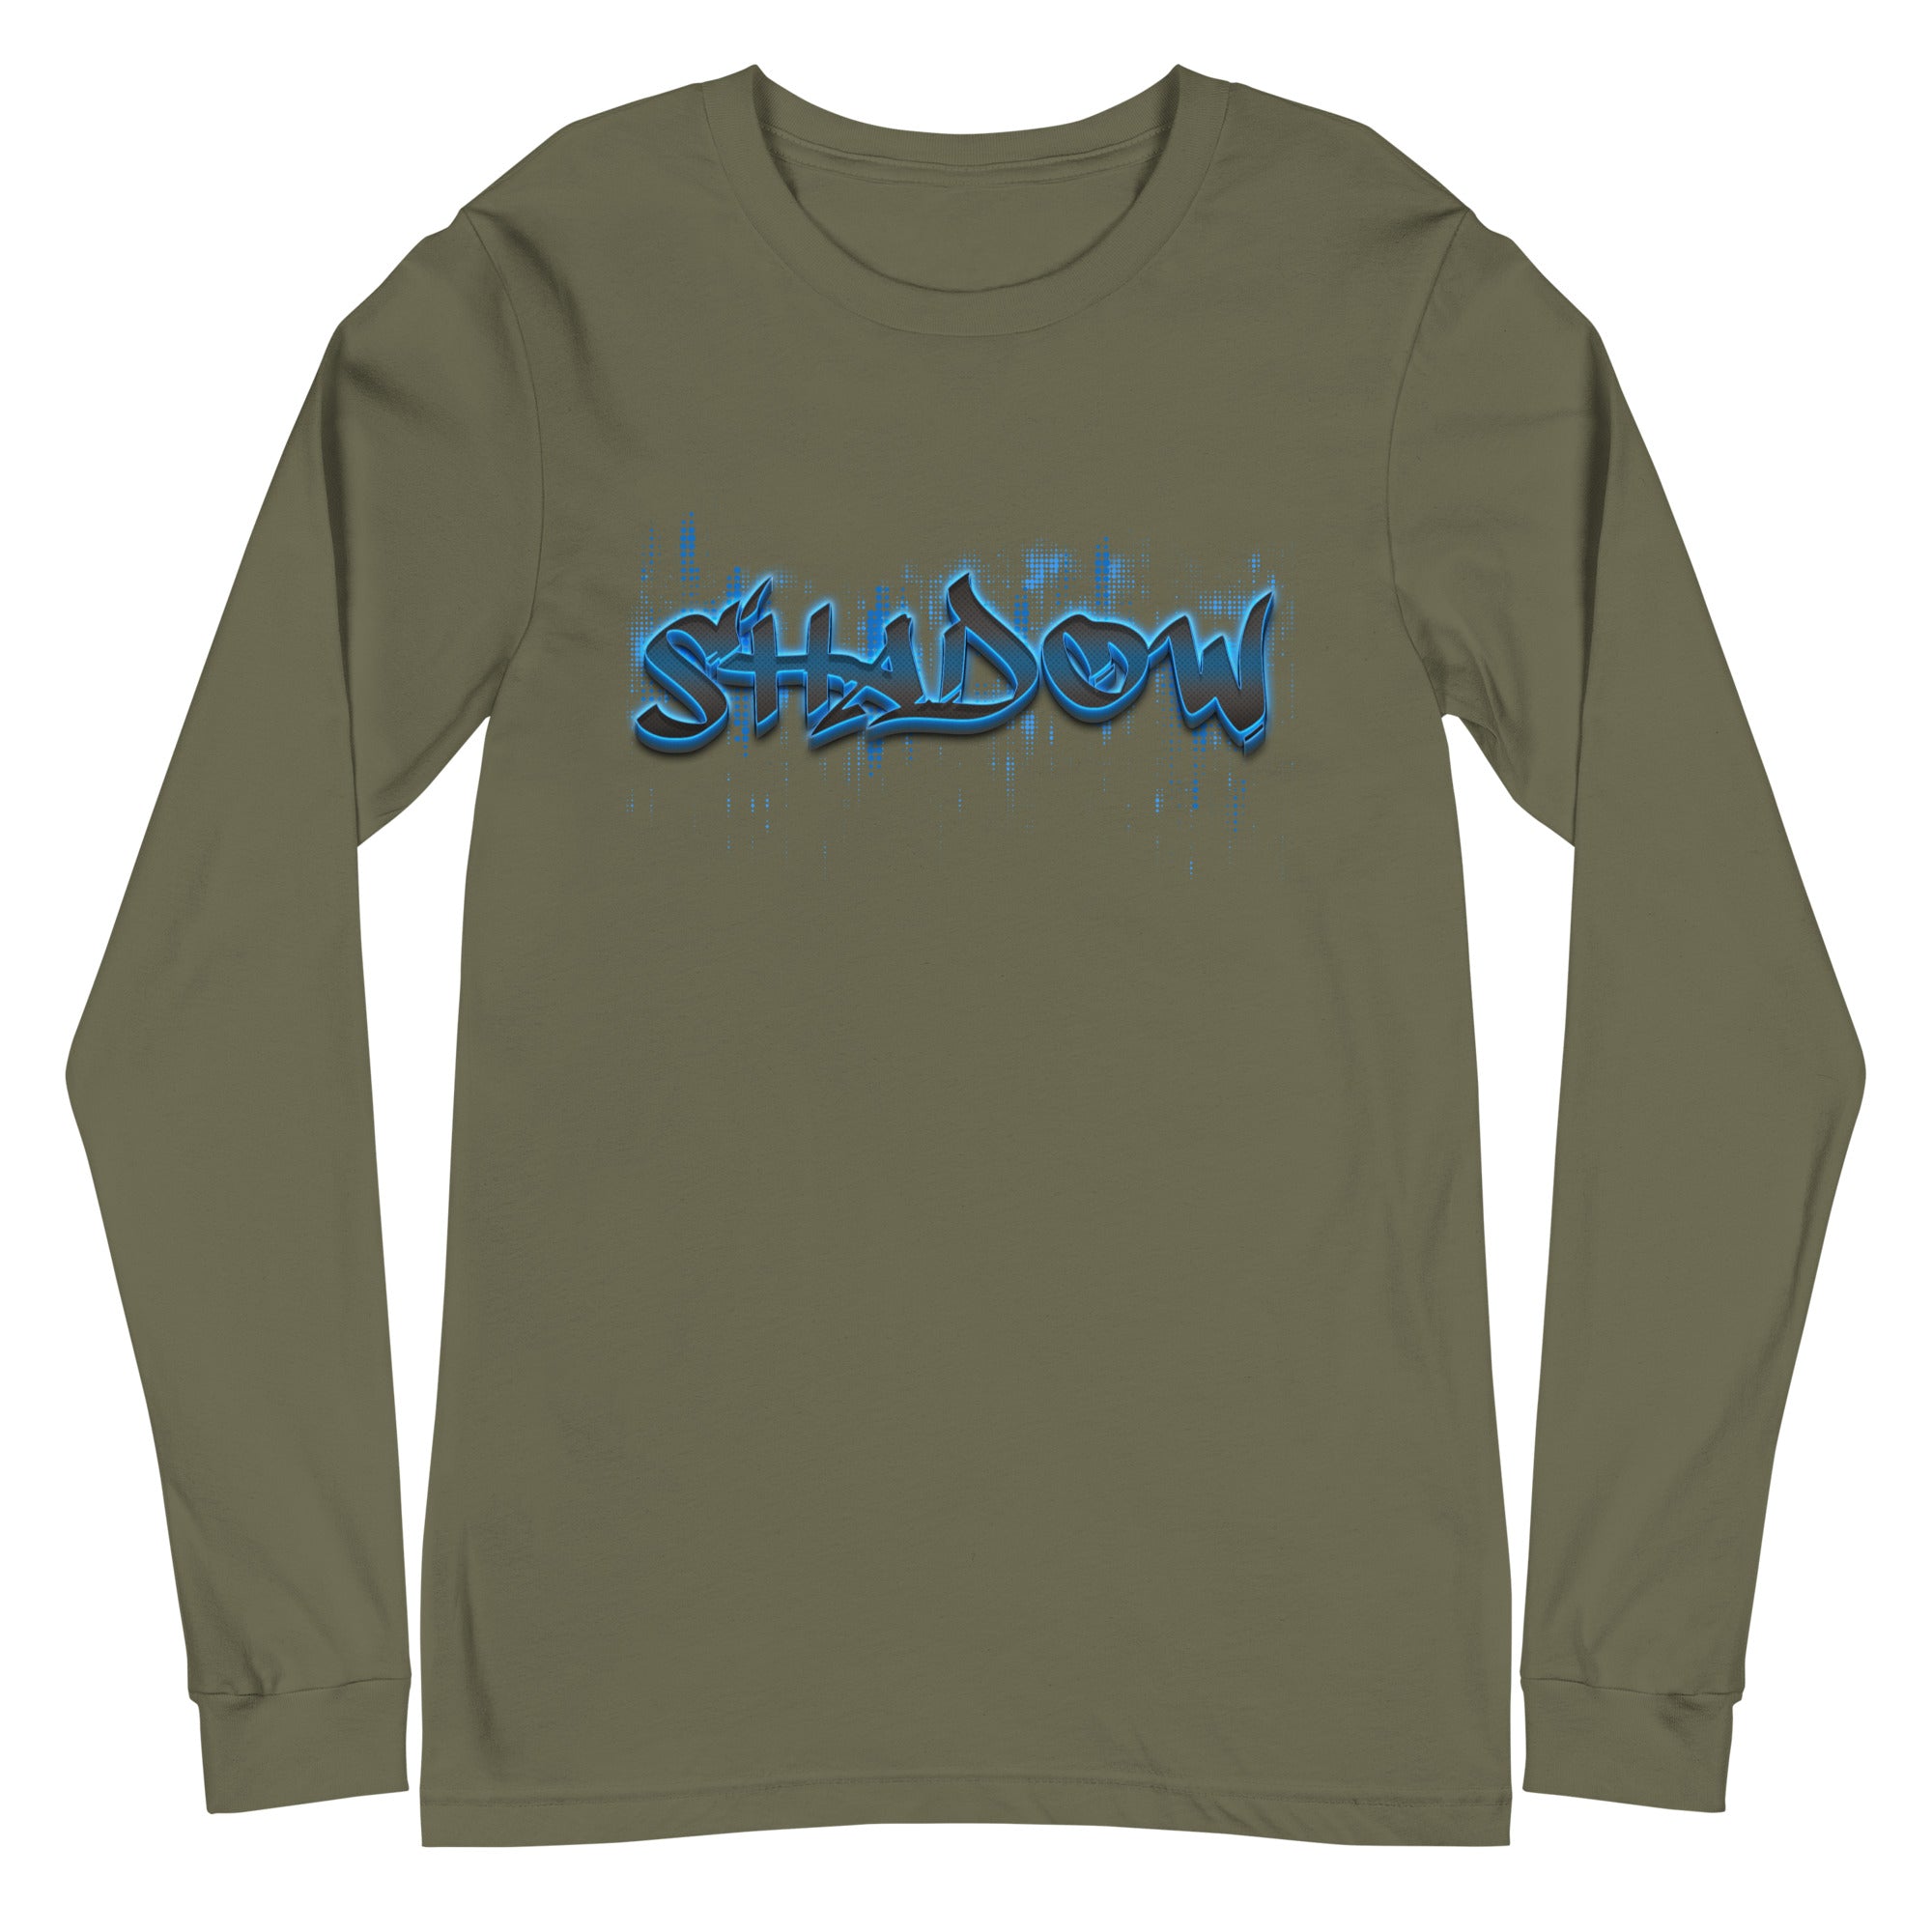 Shadow - Unisex Long Sleeve Tee